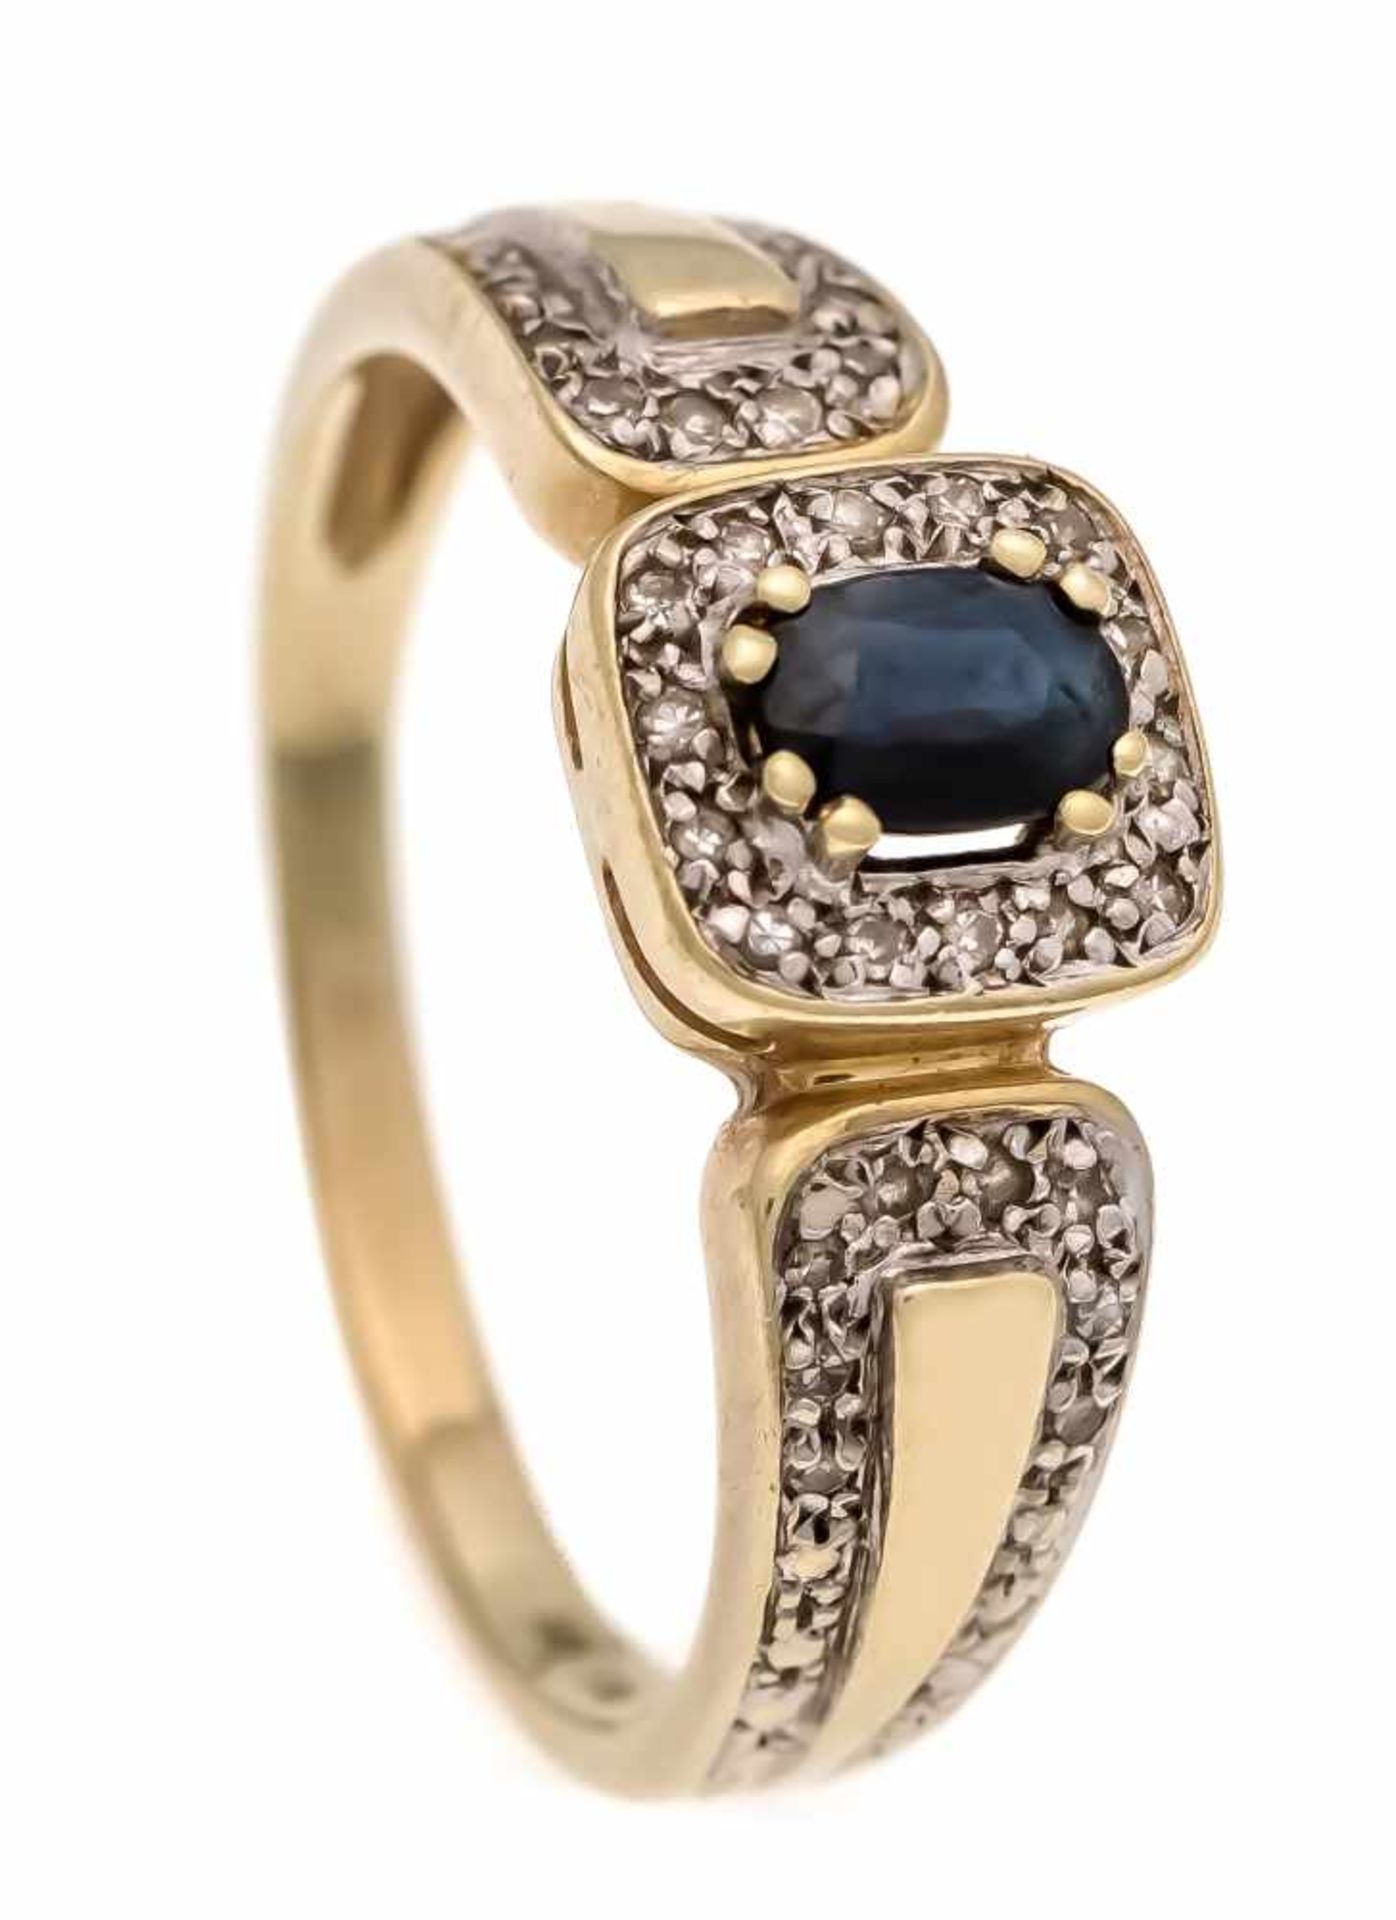 Saphir-Diamant-Ring GG/WG 585/000 mit einem oval fac. dunkelblauen Saphir 5 x 4 mm undDiamanten,